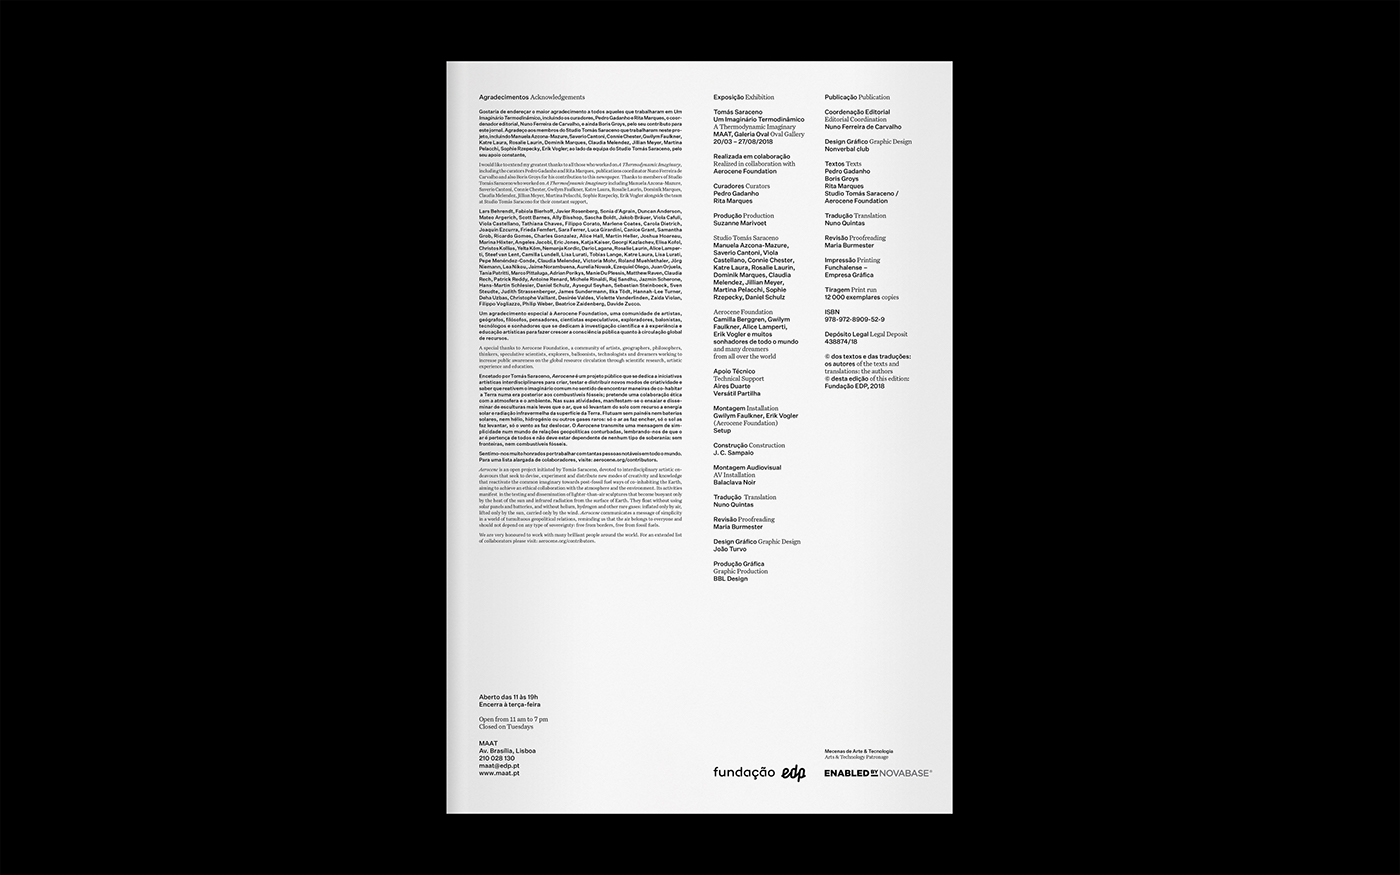 design graphic design  editorial design  museum publishing   typography   saraceno aerocene